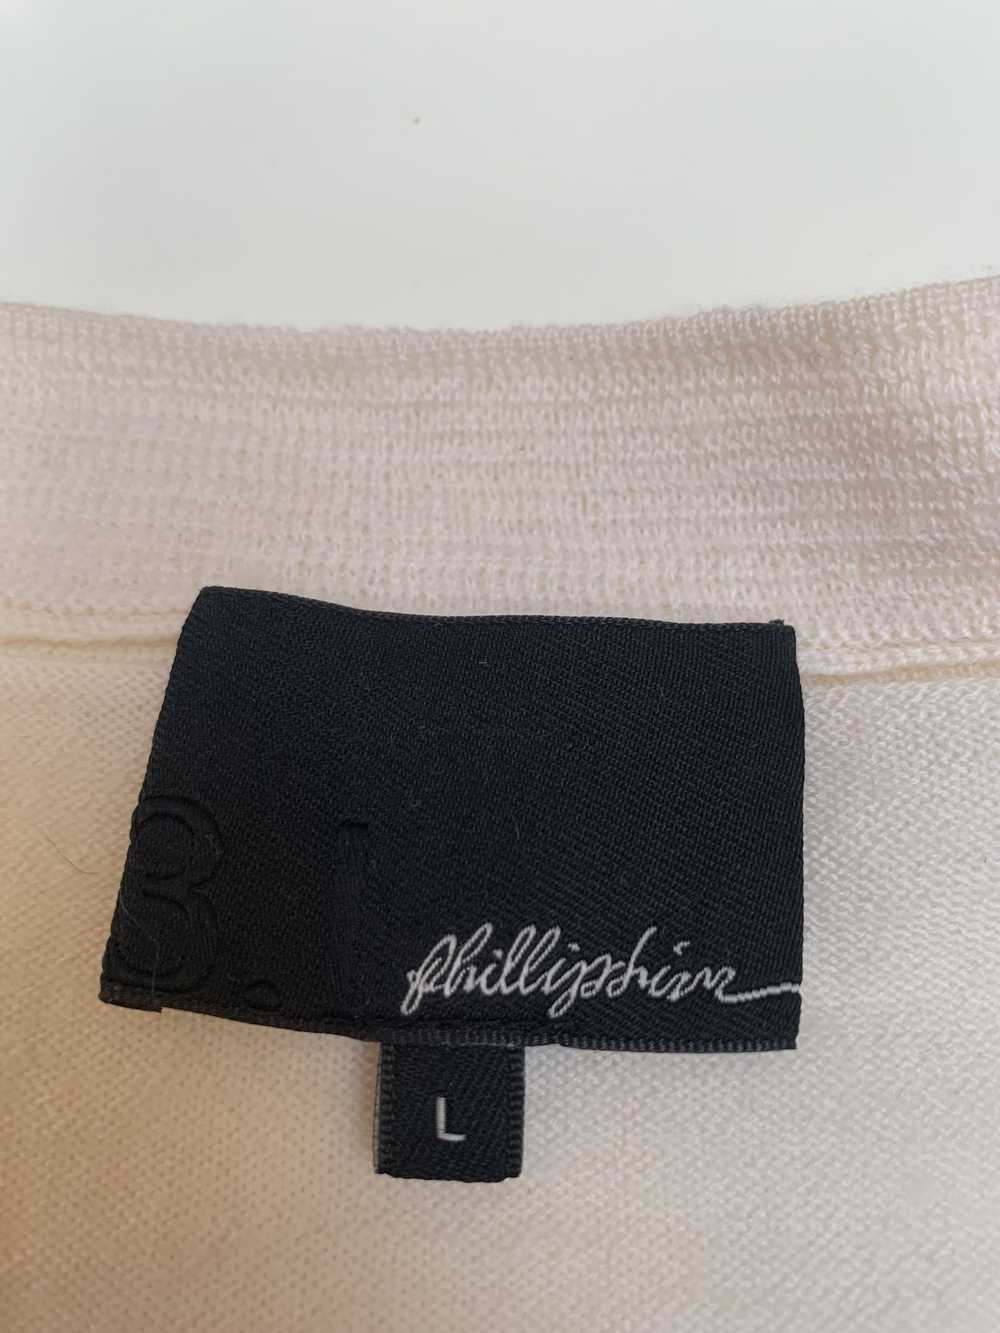 3.1 Phillip Lim 3.1 Phillip Lim Sweater - image 2